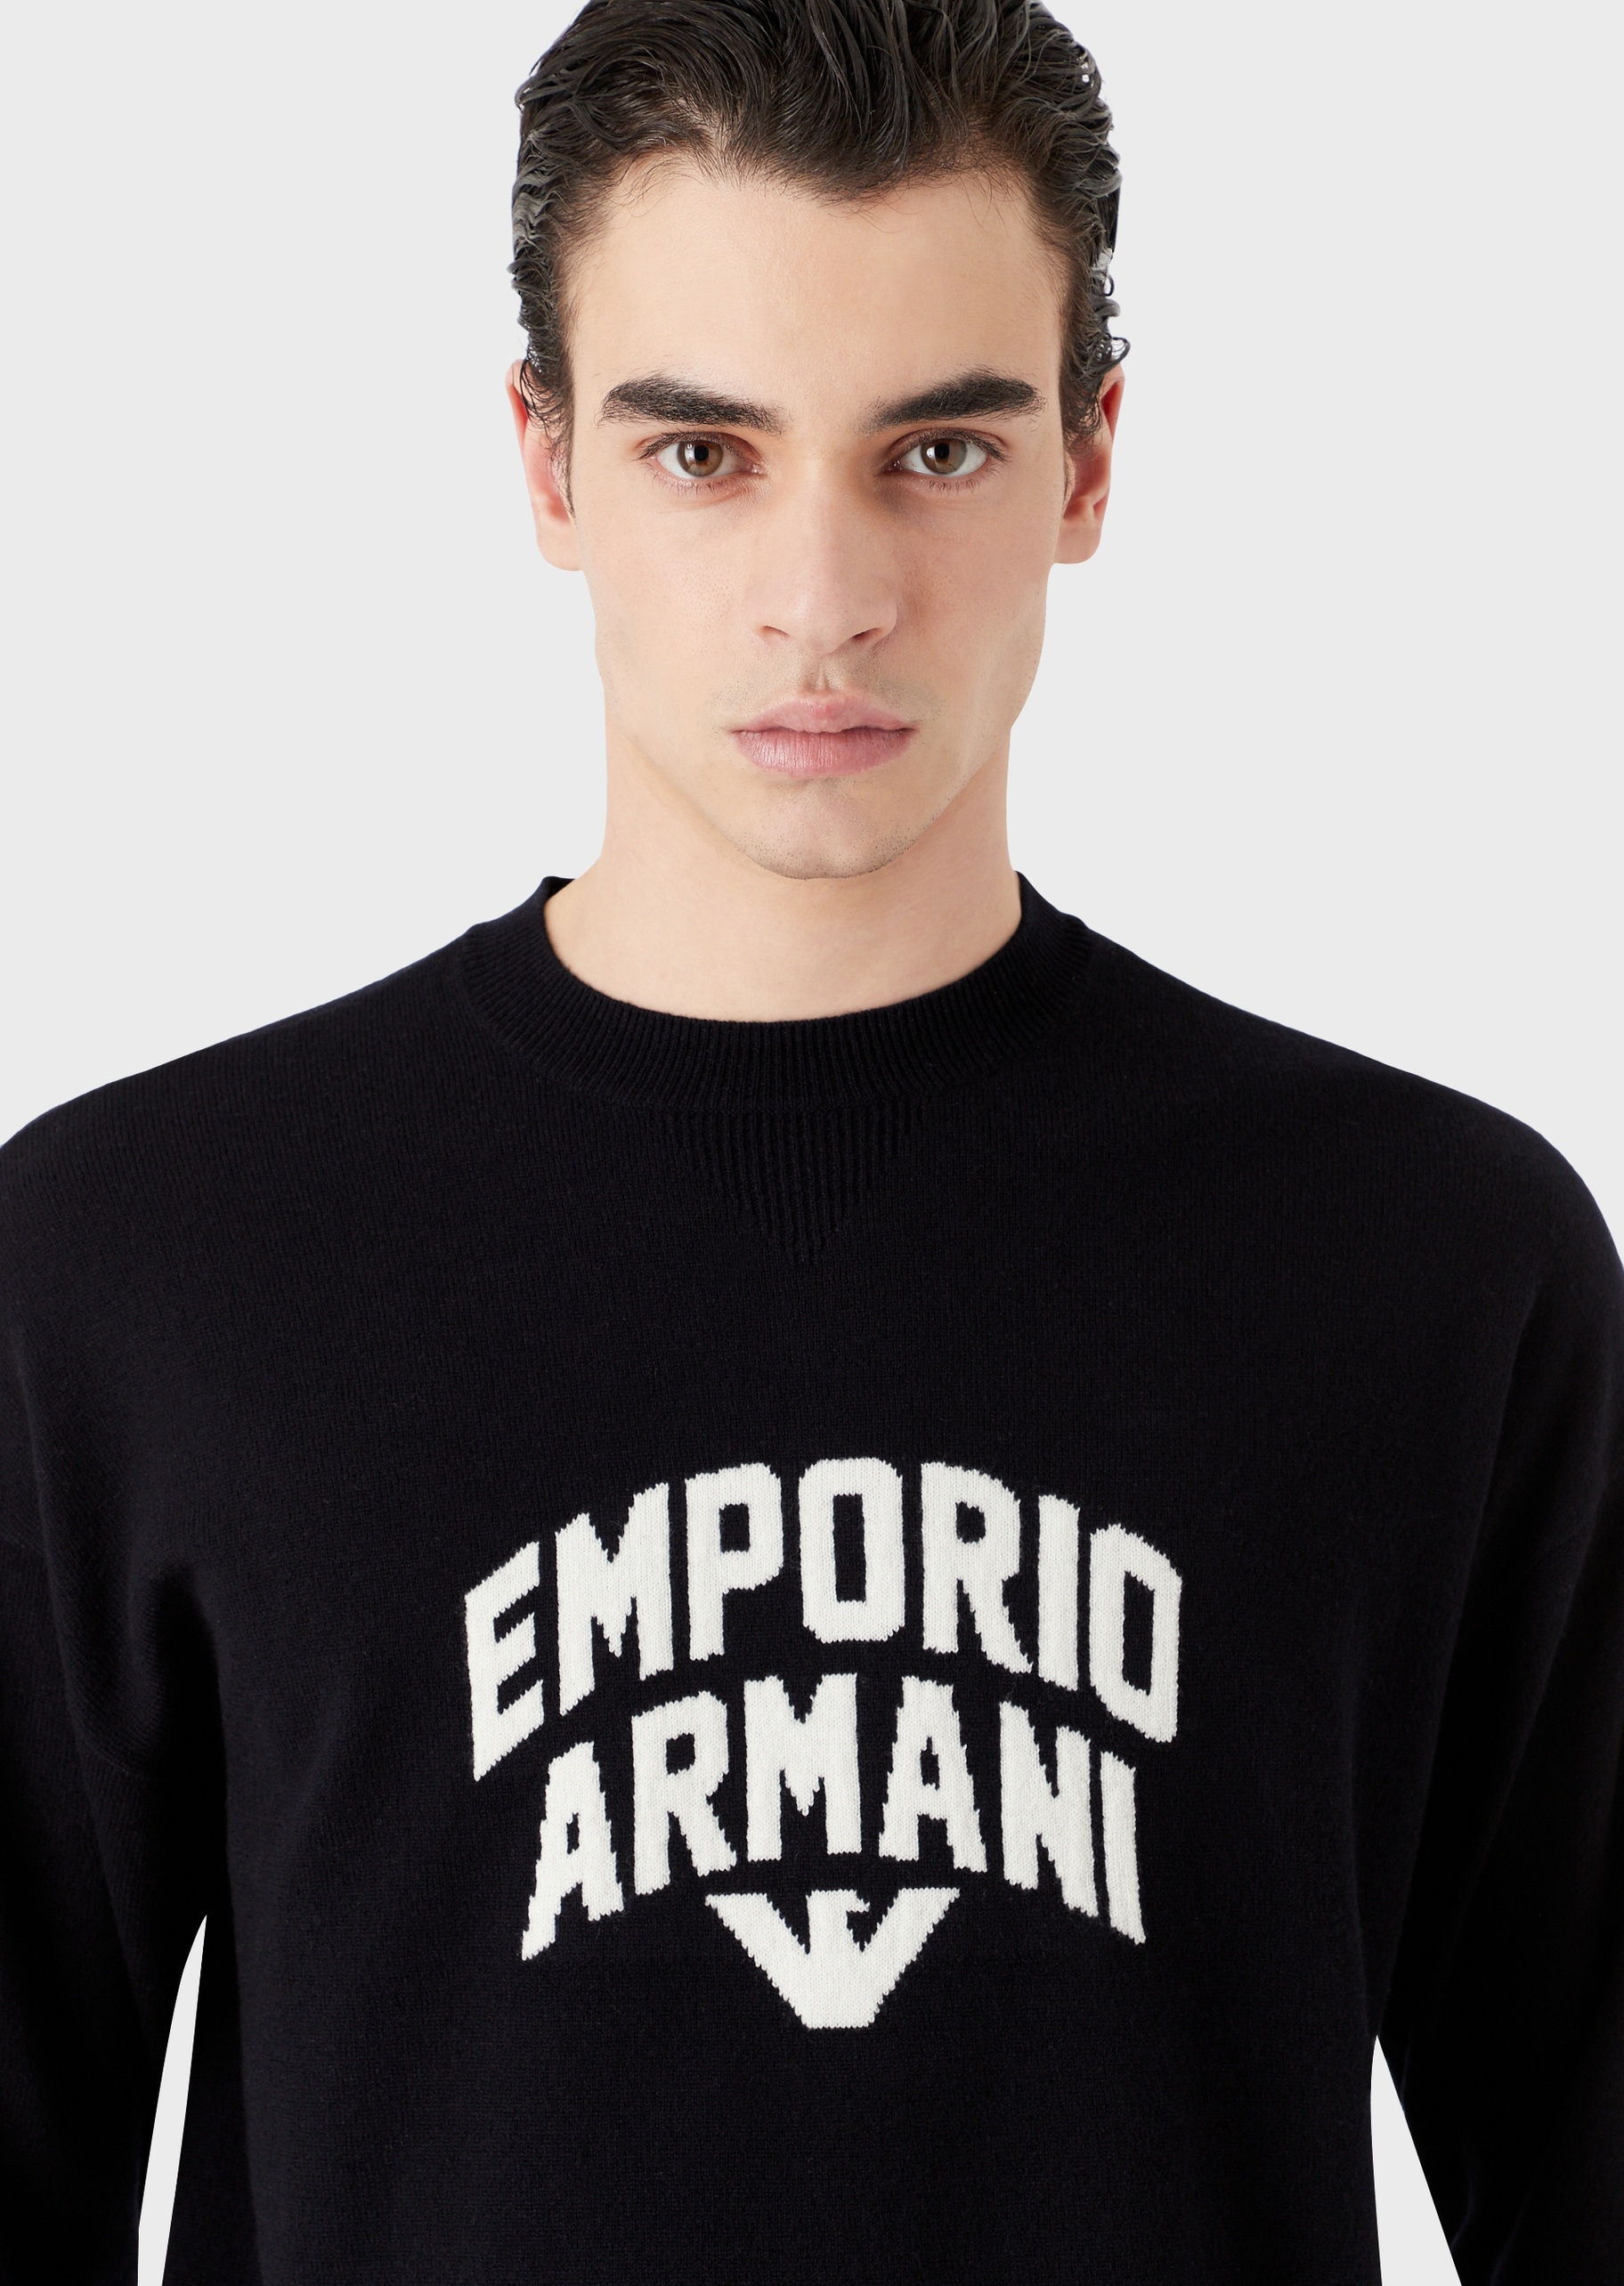 Emporio Armani 醒目提花纯羊毛衫